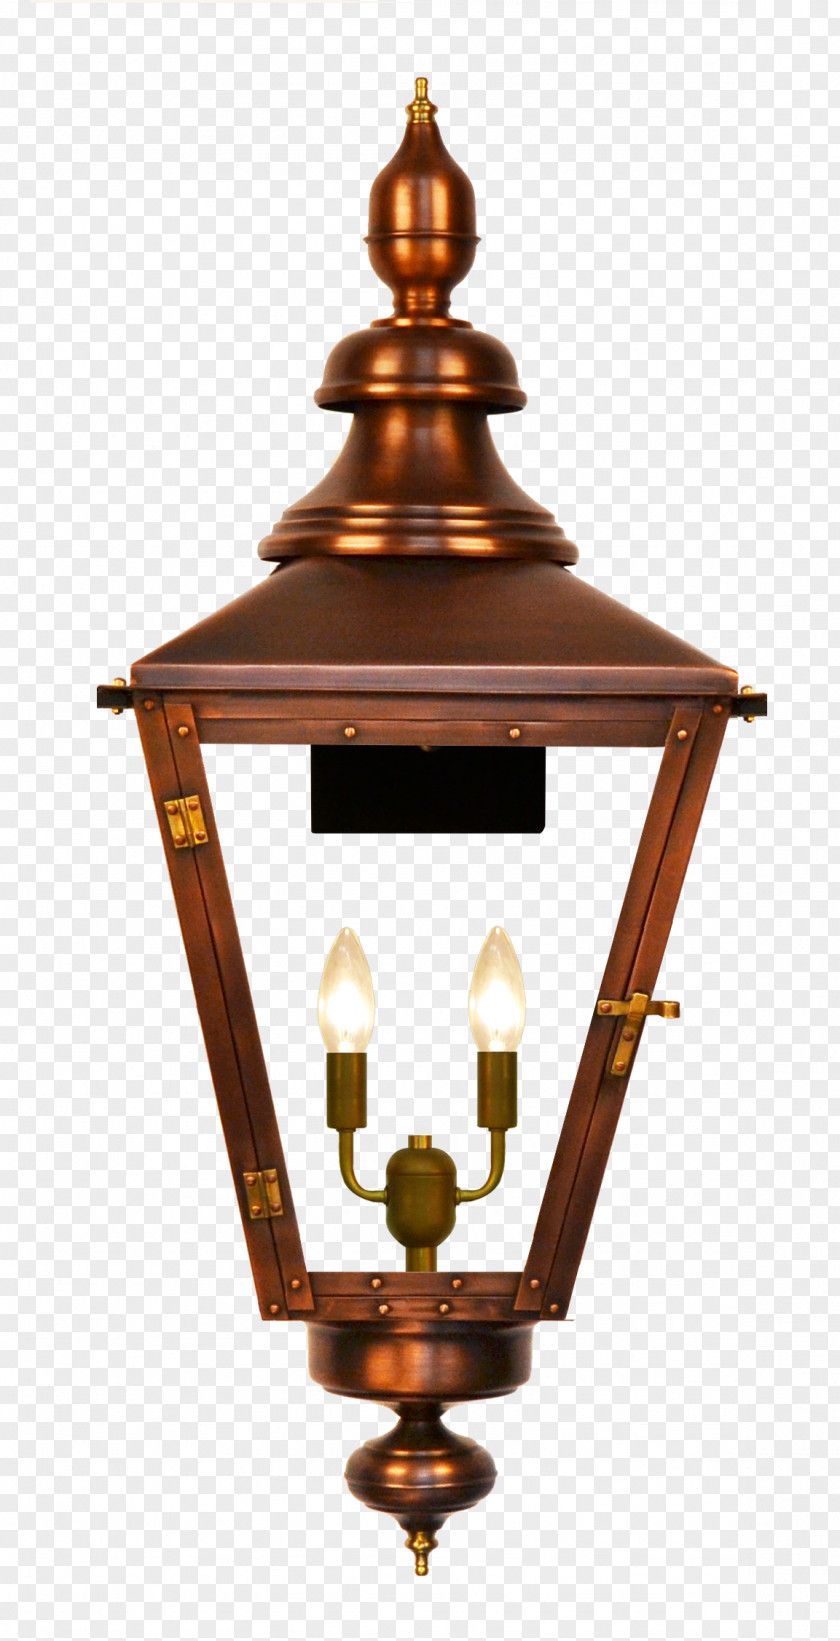 Kongming Latern Gas Lighting Lantern Coppersmith PNG